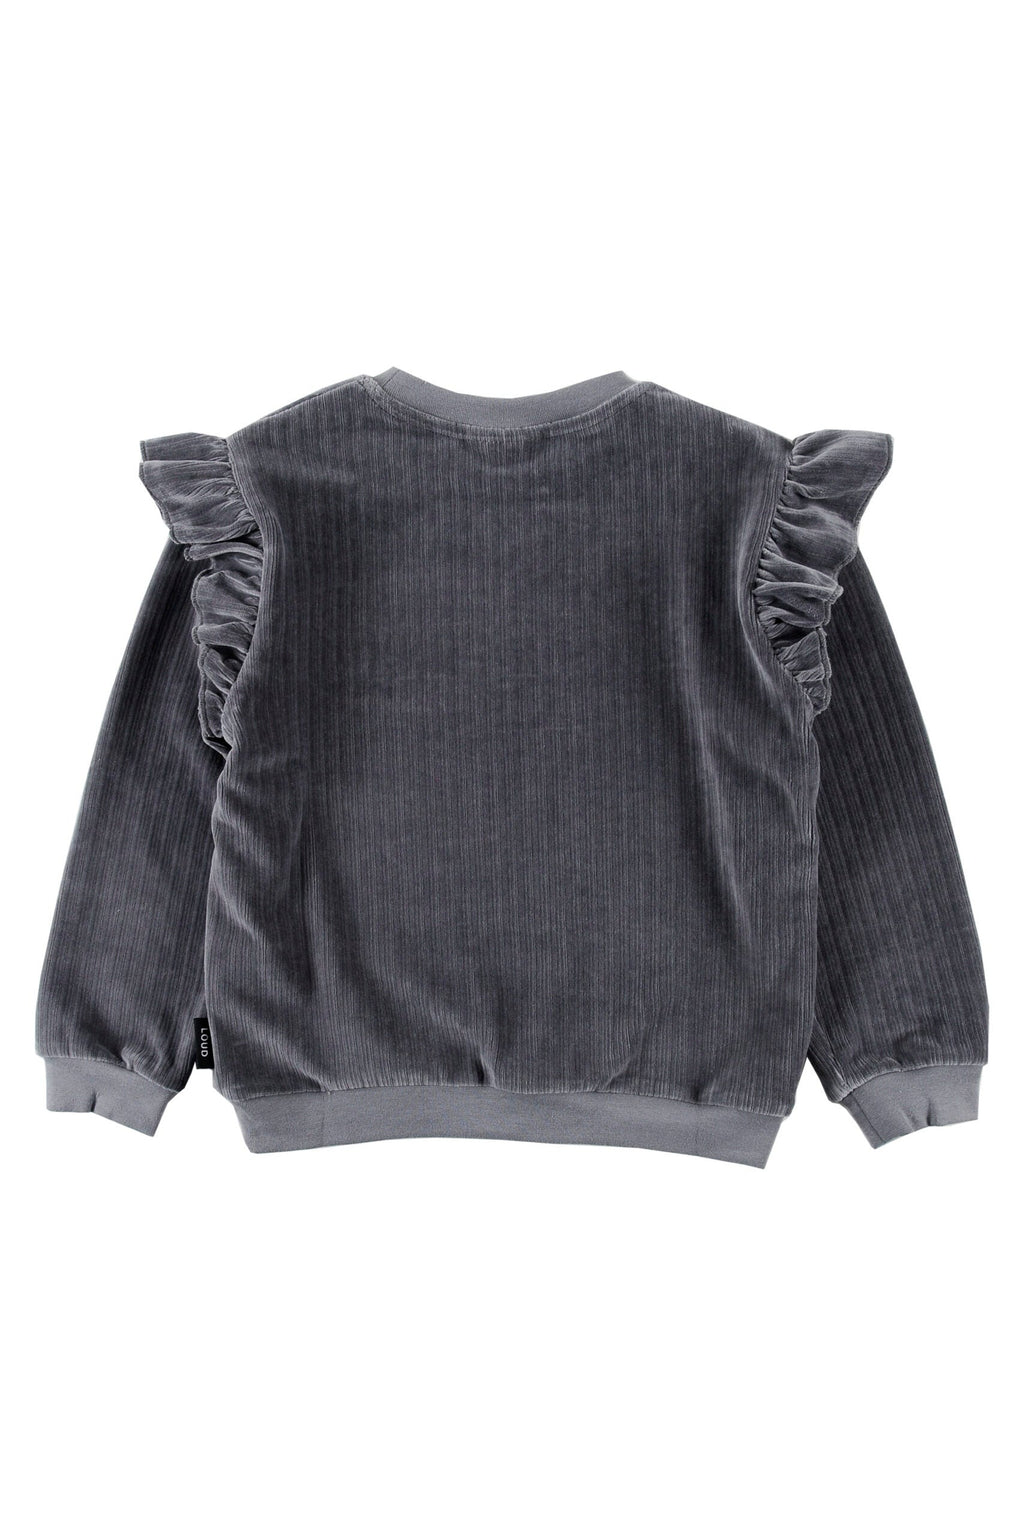 Loud Apparel Ruffles Sweater - Asphalt